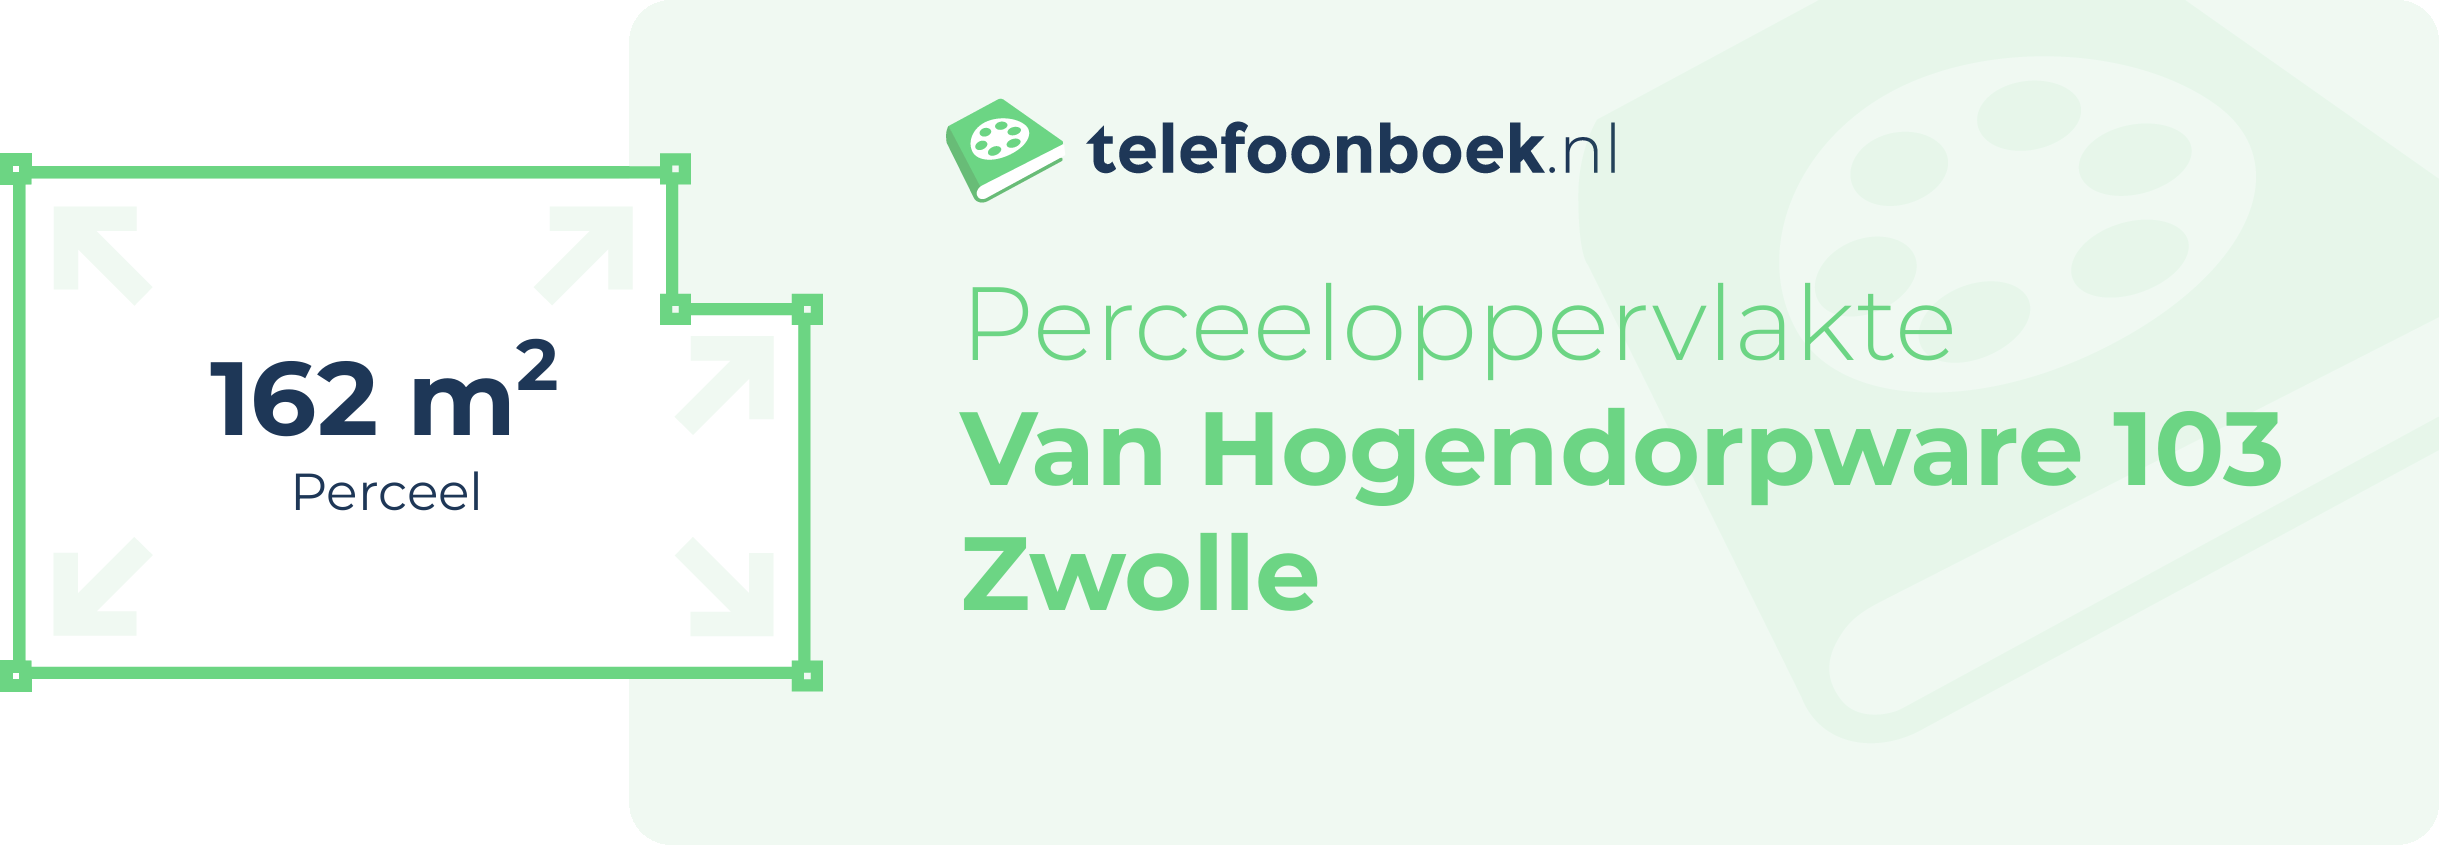 Perceeloppervlakte Van Hogendorpware 103 Zwolle